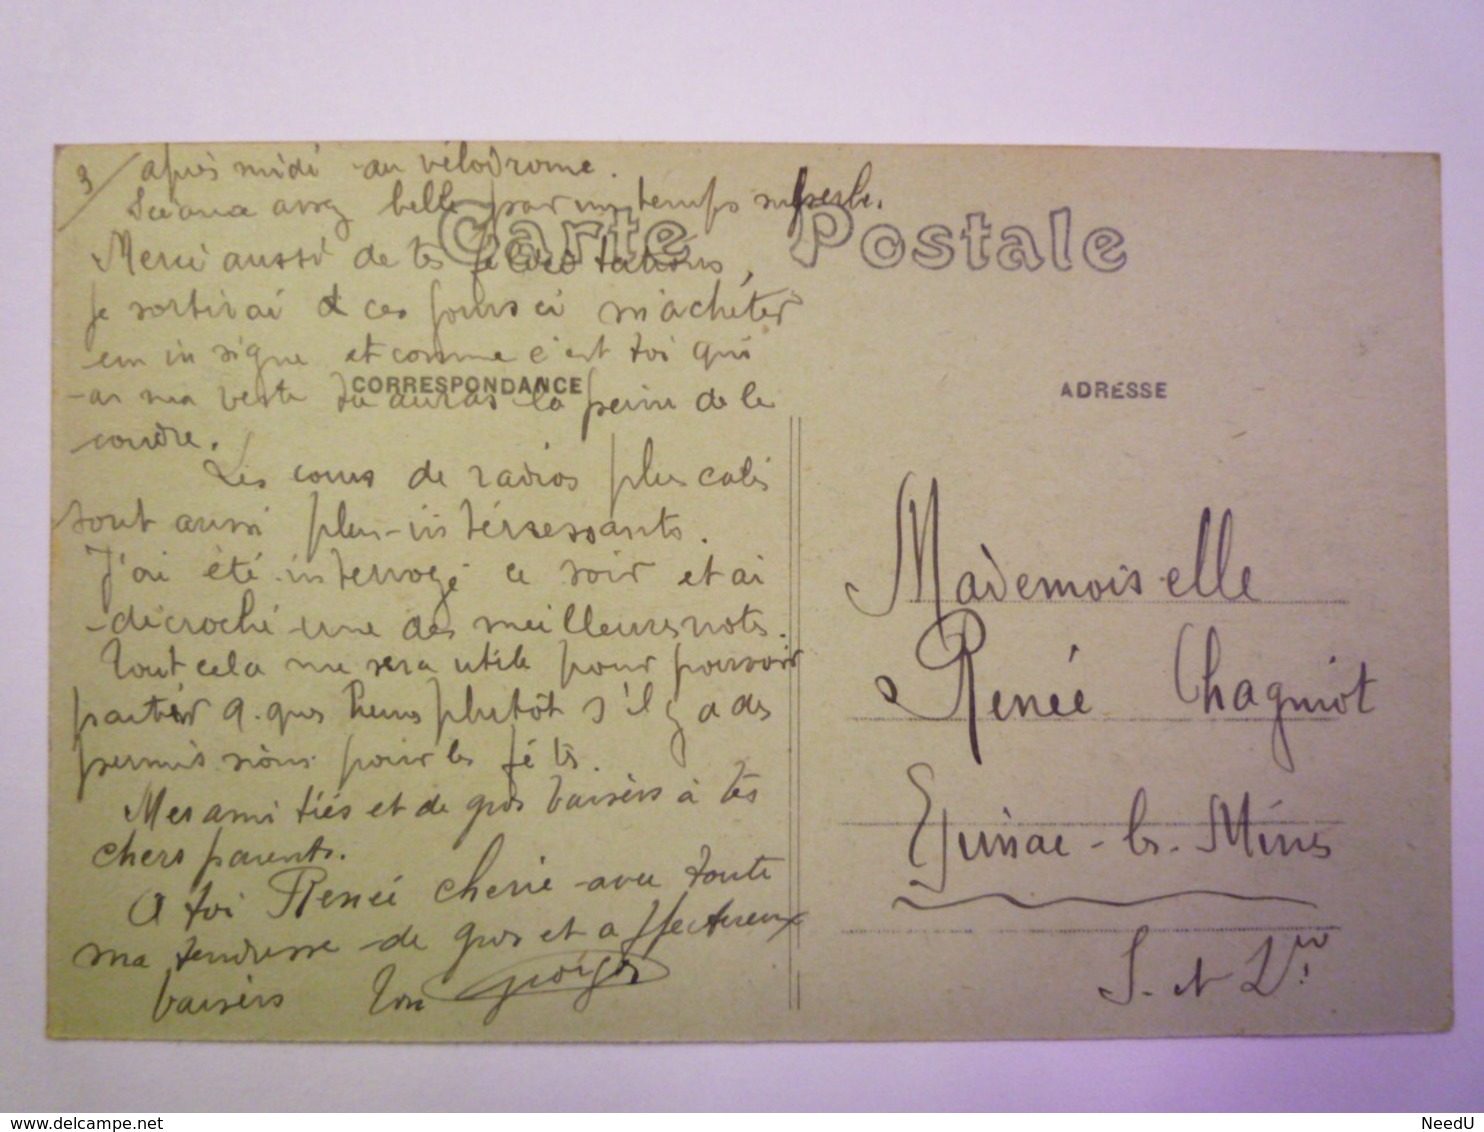 GP 2019 - 81  Fêtes Jeanne D'ARC  1922  -  Mgr  TOUCHET  Evêque D'Orléans    XXX - Orleans